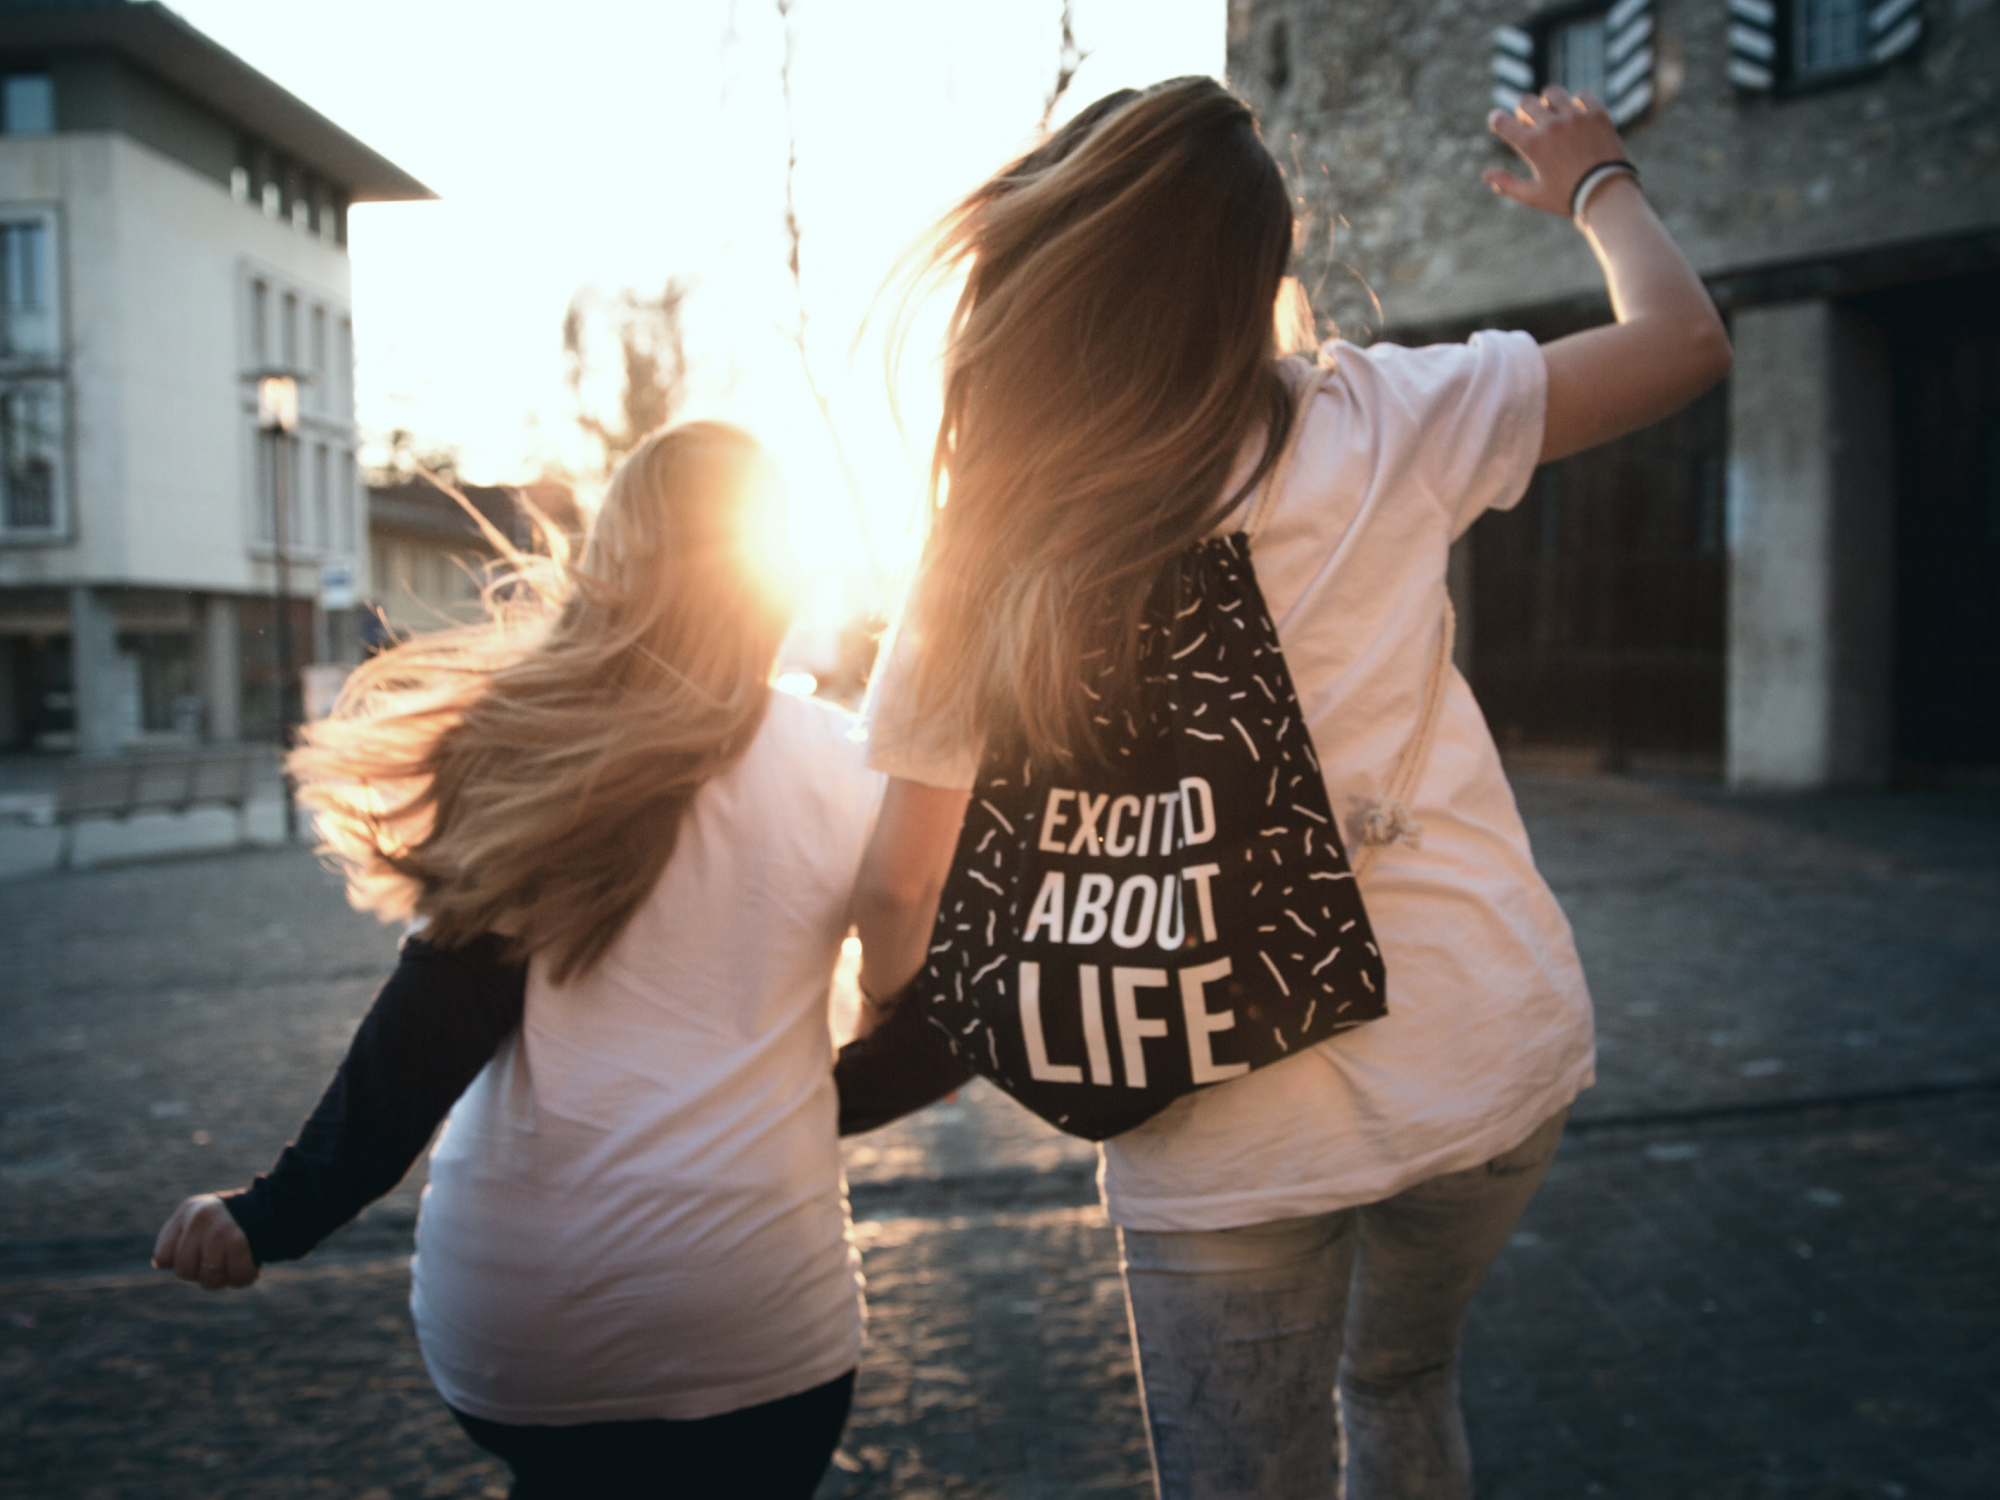 Två barn som springer i motljus. En av dem har en ryggsäck med texten "Excited about life"